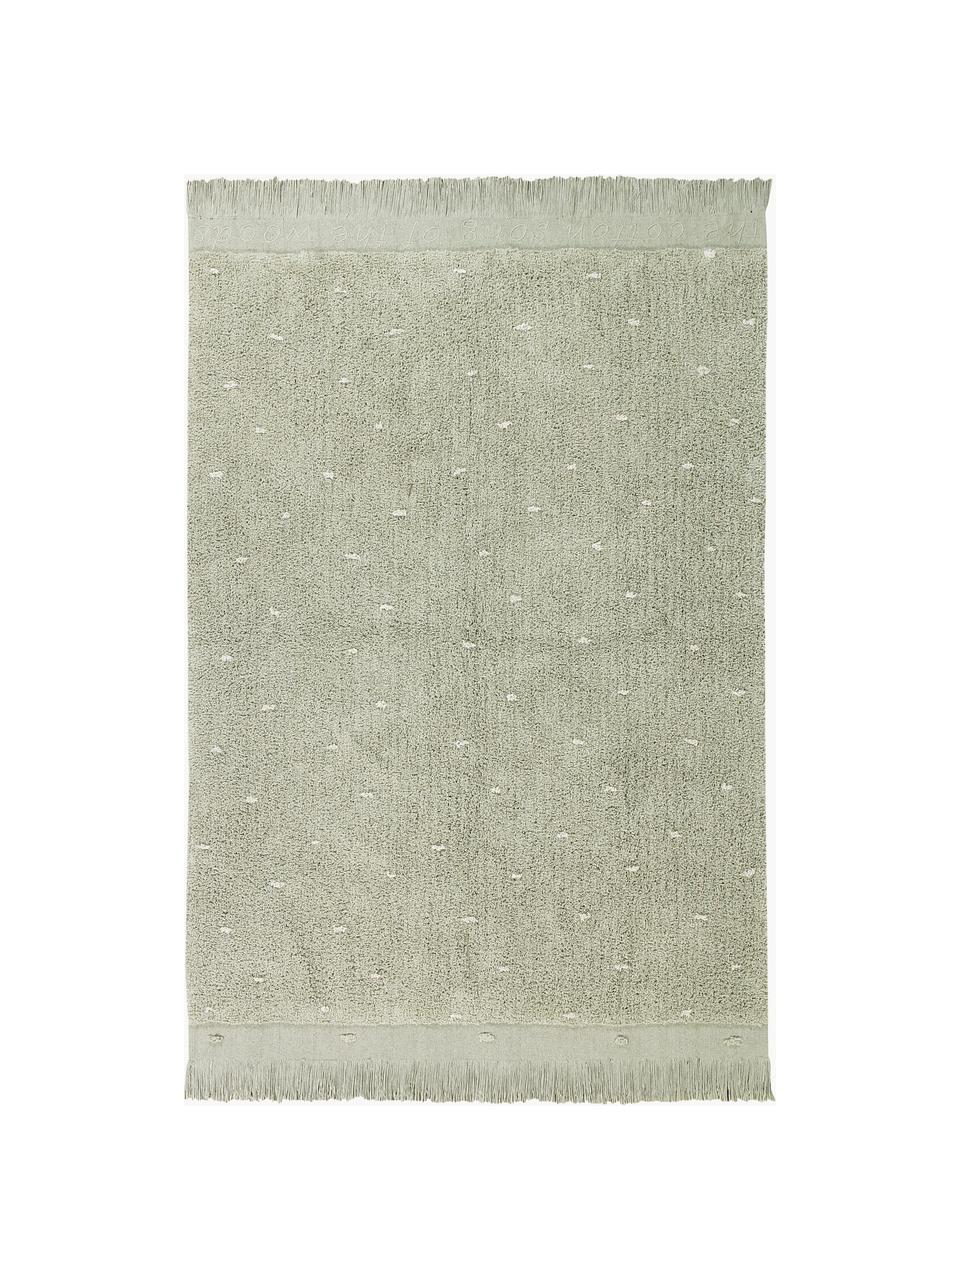 Tappeto per bambini tessuto a mano Woods, Retro: 100% cotone, Verde salvia, Larg. 140 x Lung. 200 cm (taglia S)